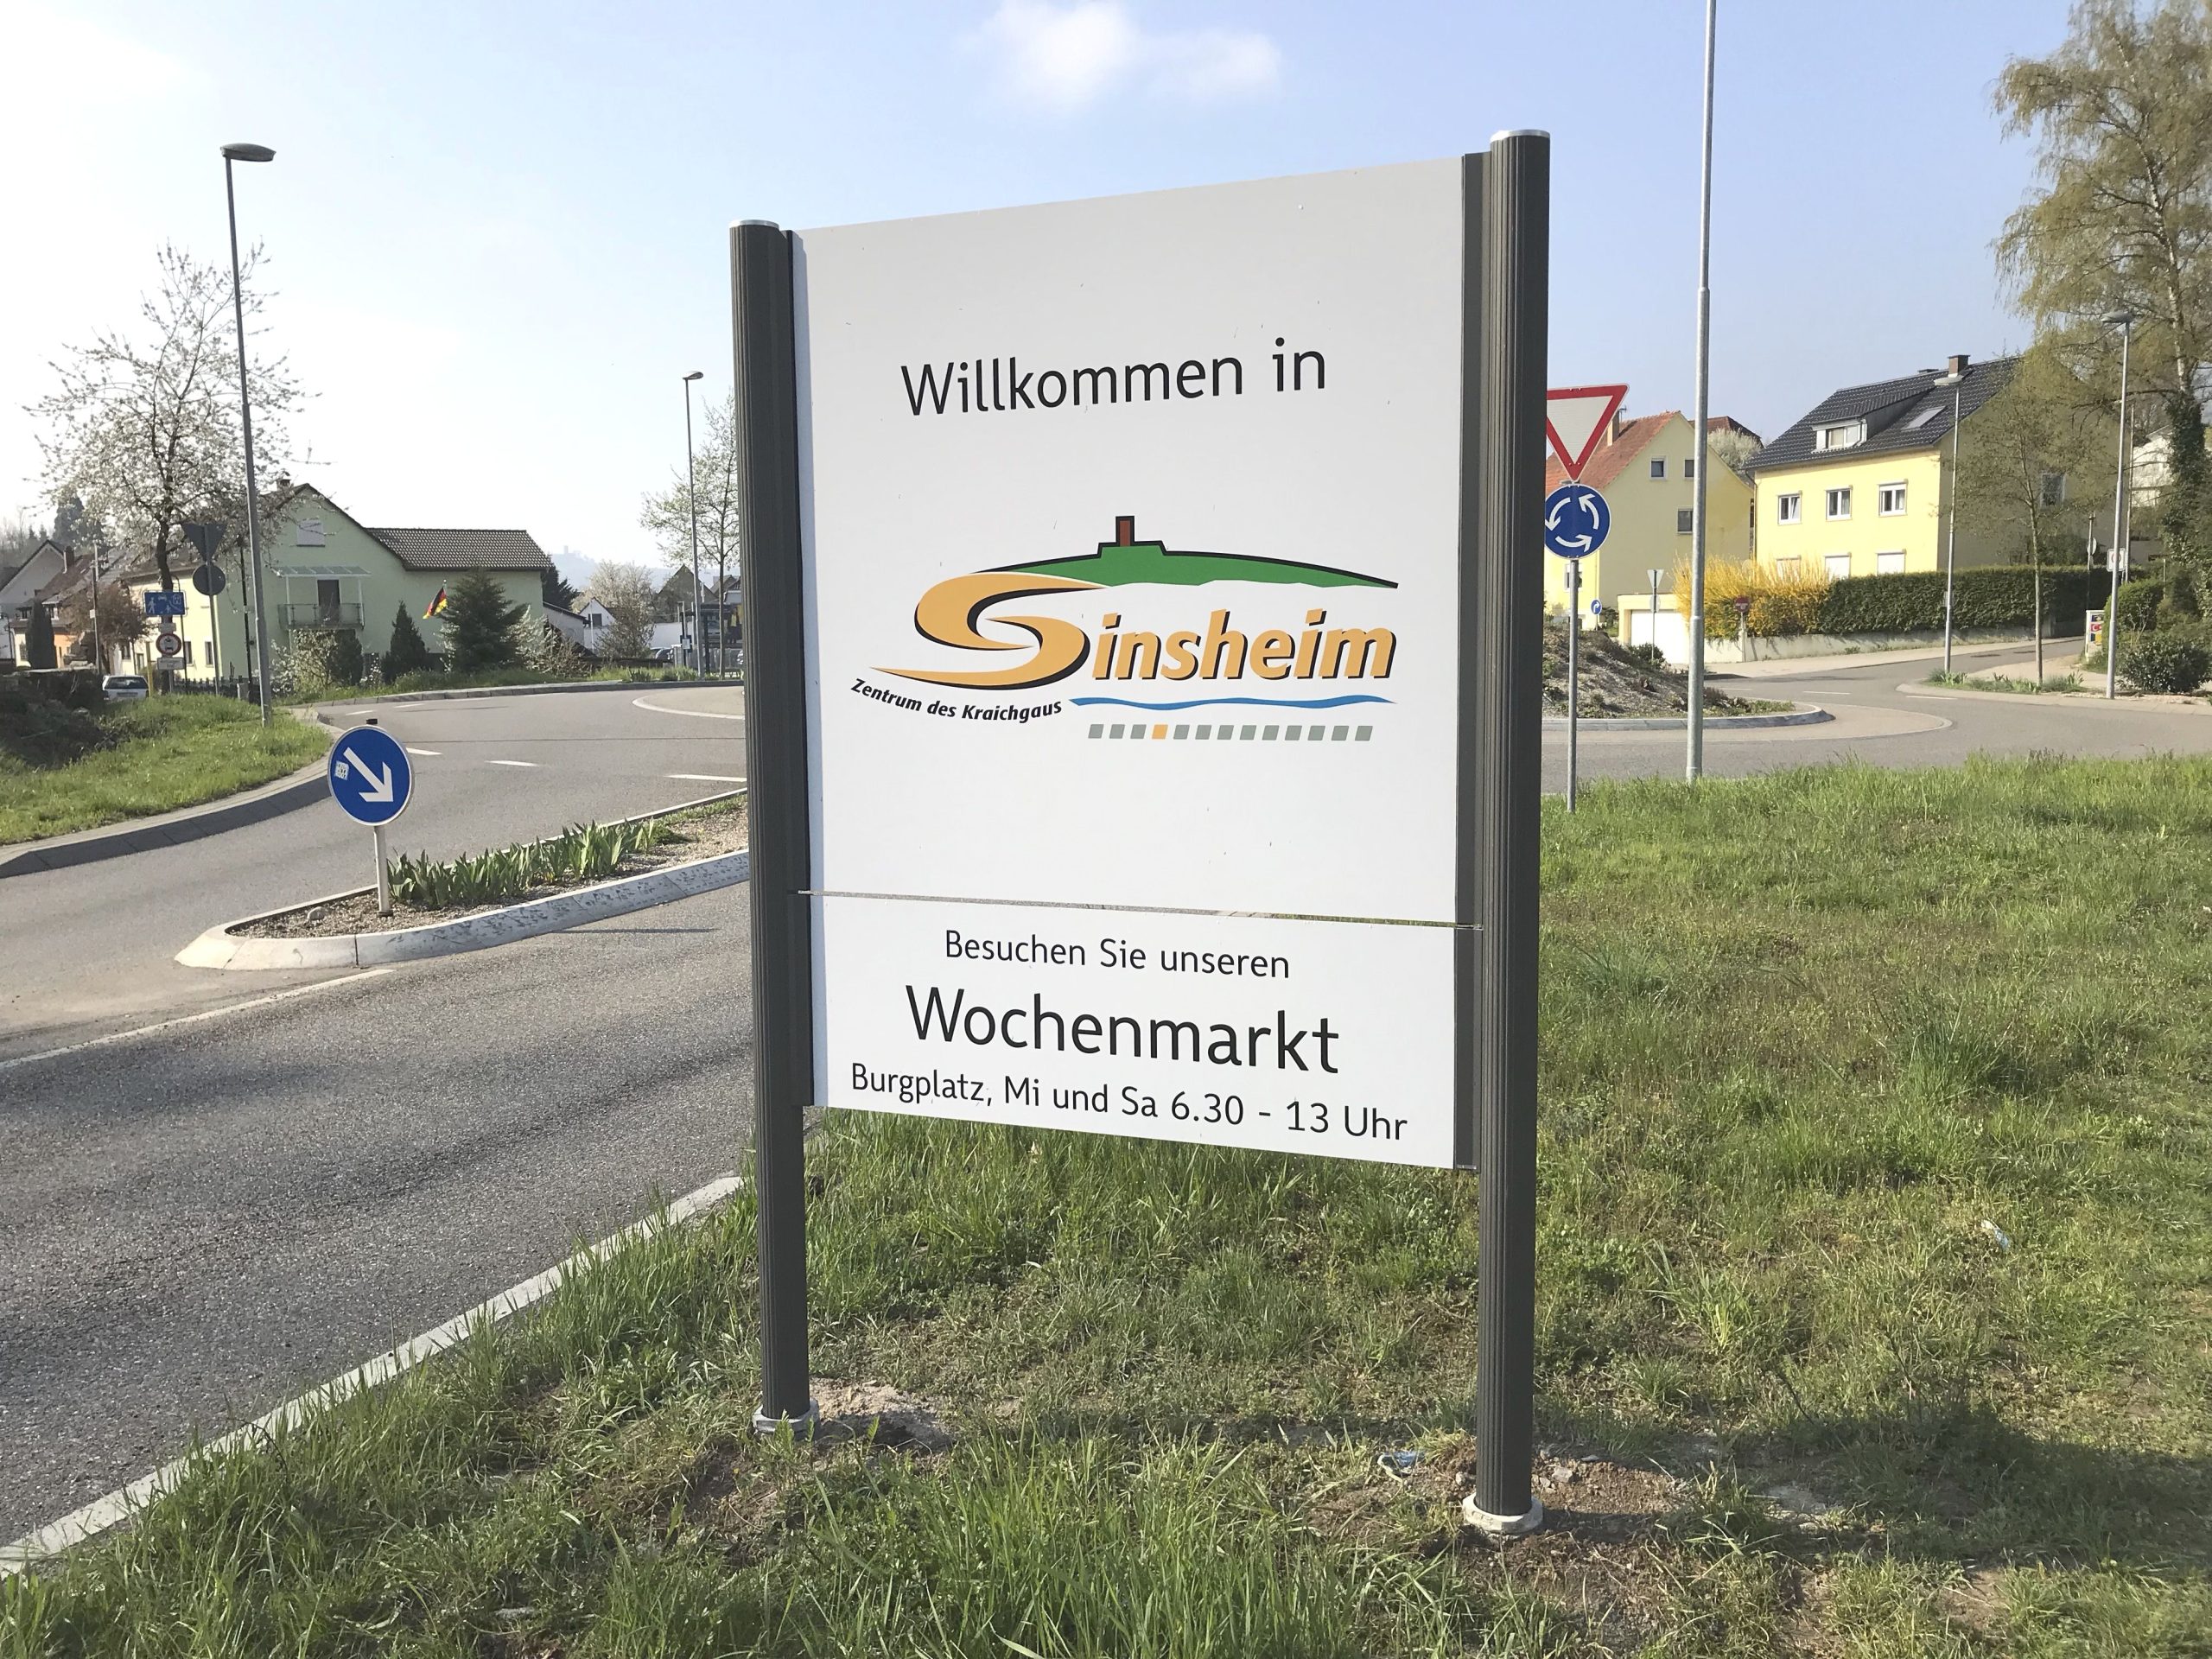 Willkommensgruß nördlicher Ortseingang Sinsheim mit aktuellen Hinweisen zum Wochenmarkt